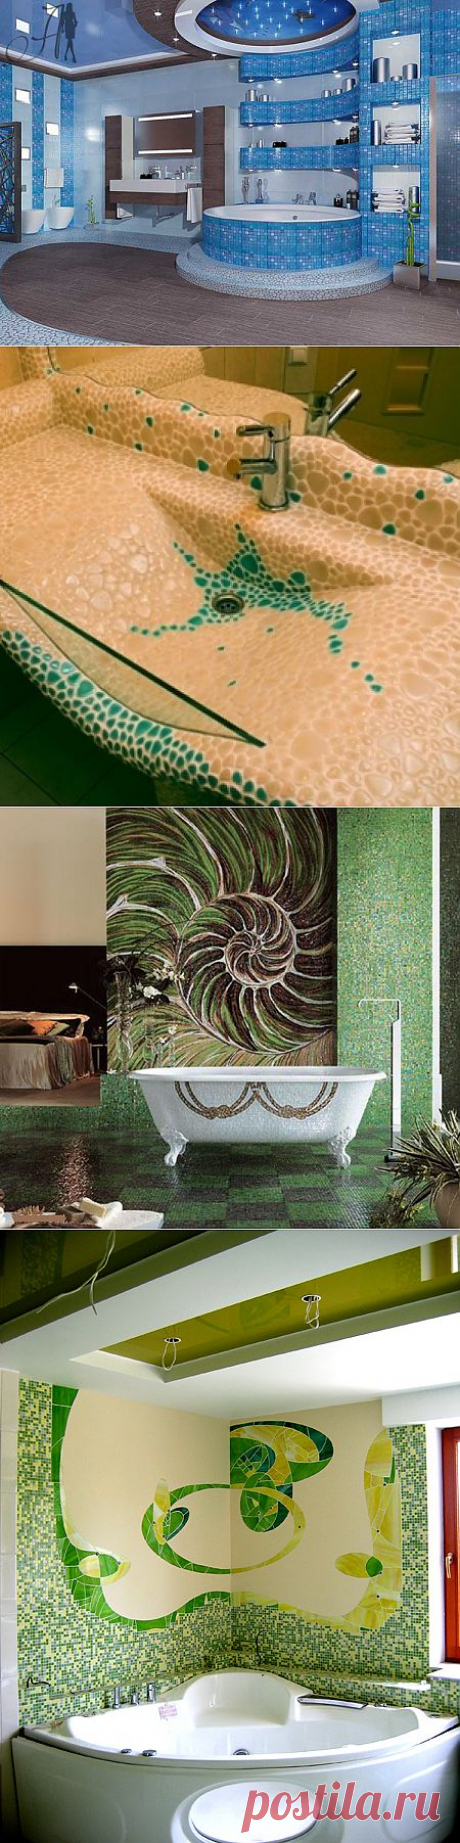 (+1) комм - Преобразите ванную комнату: использование мозаики | Интерьер и Дизайн